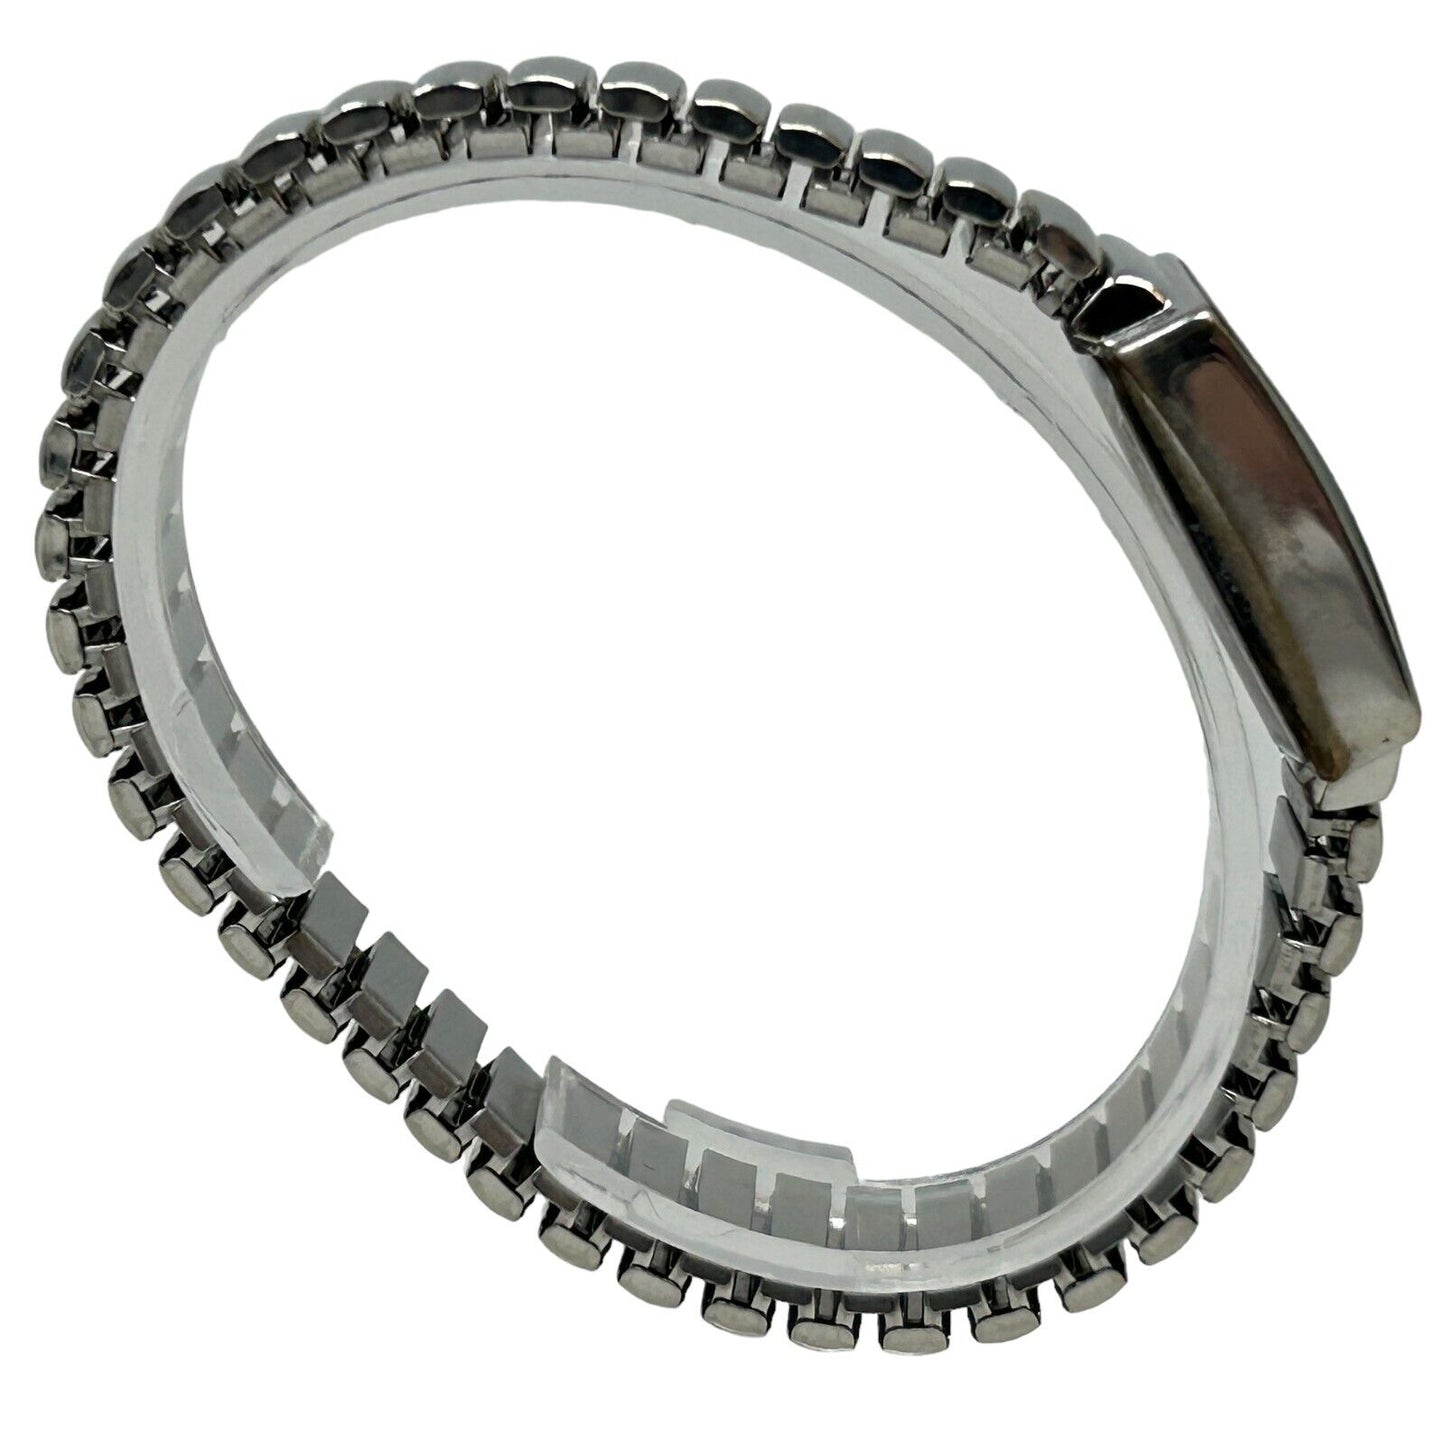 Diamond Brand Womens Wristwatch Silver Bracelet Band Analog 12 Hour Dial